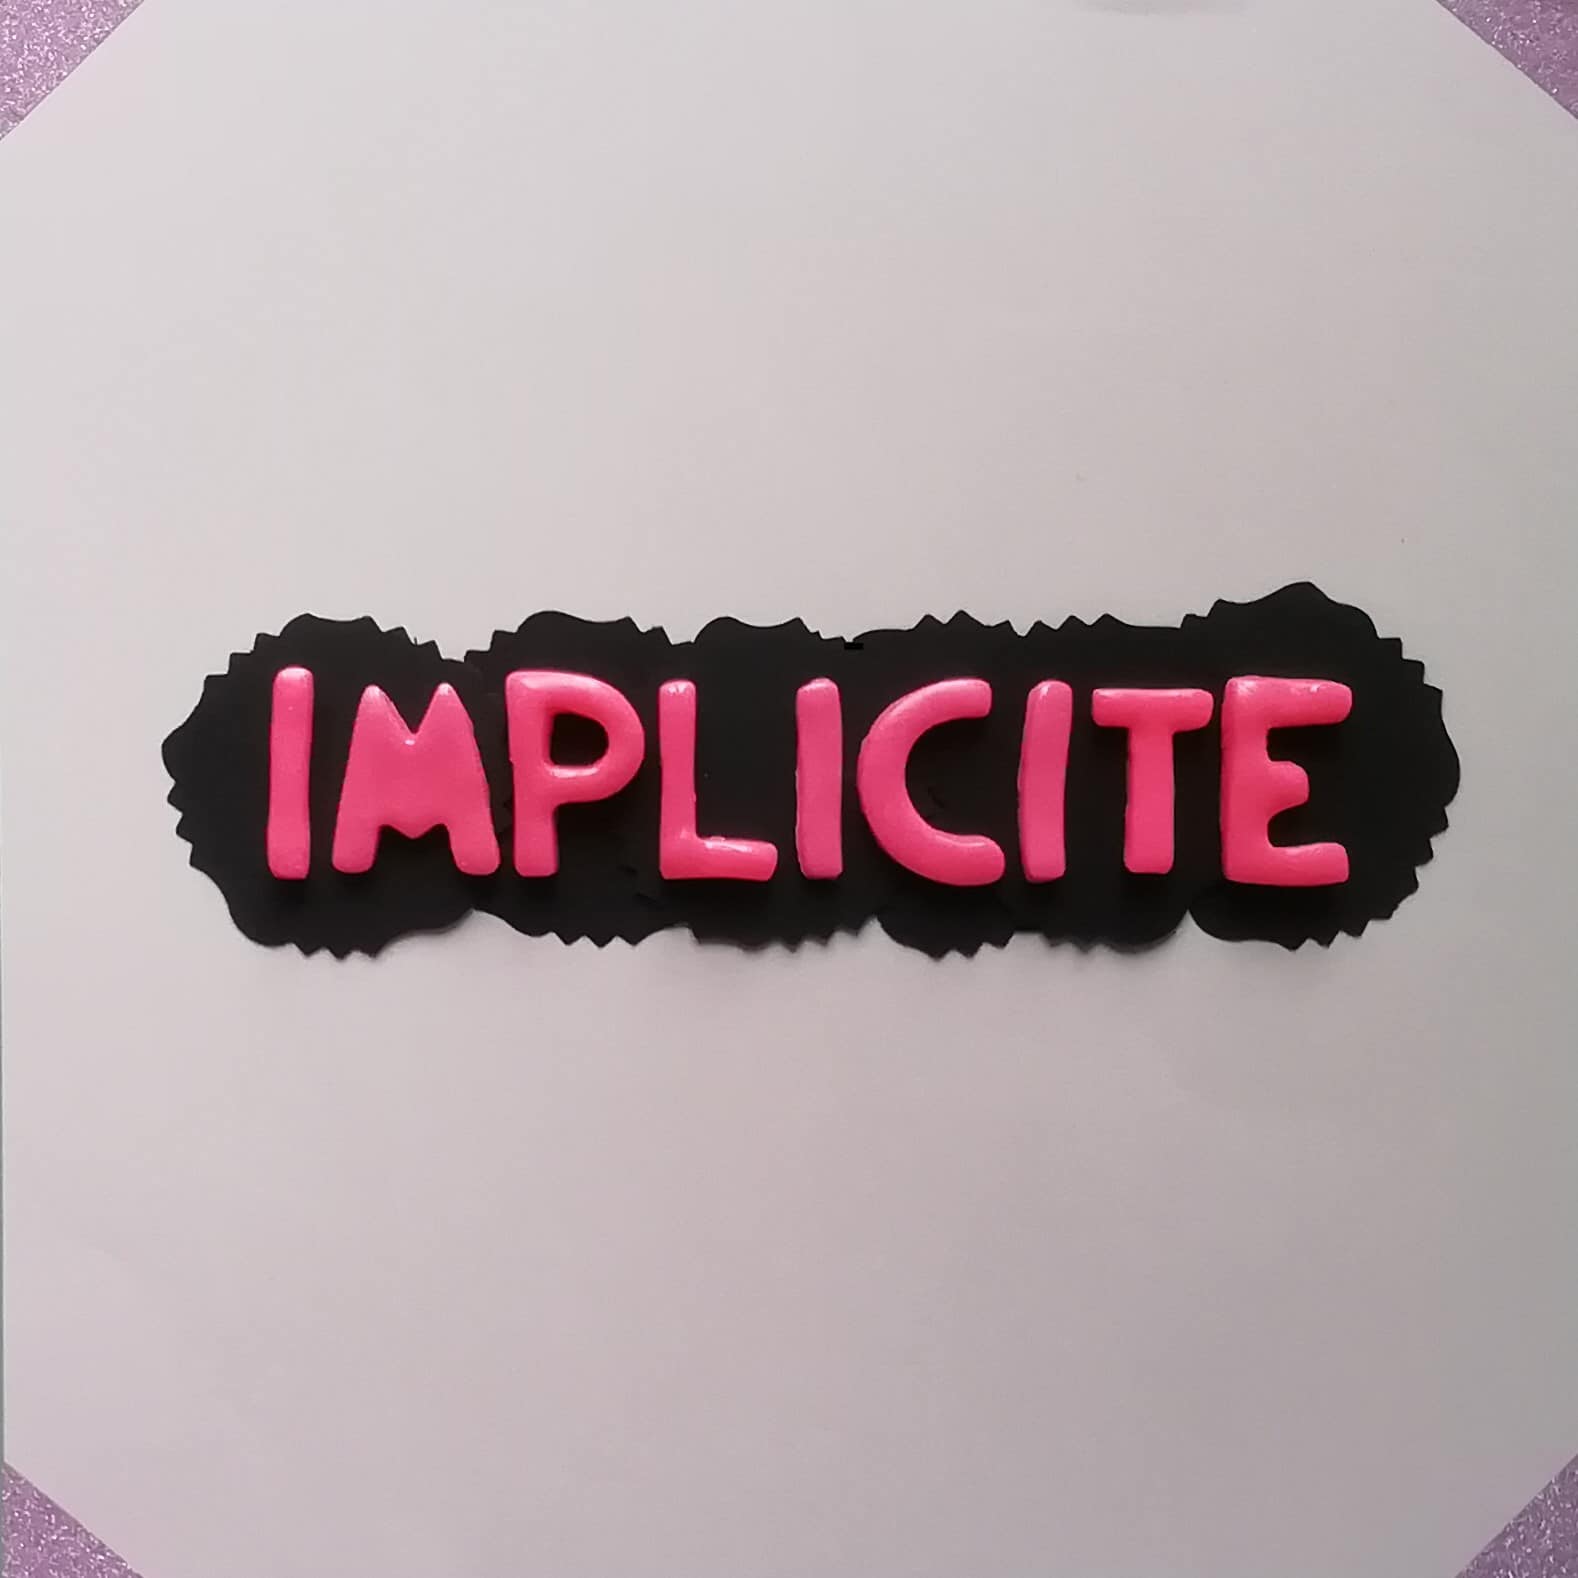 Sur cette image, on peut lire le mot "implicite".